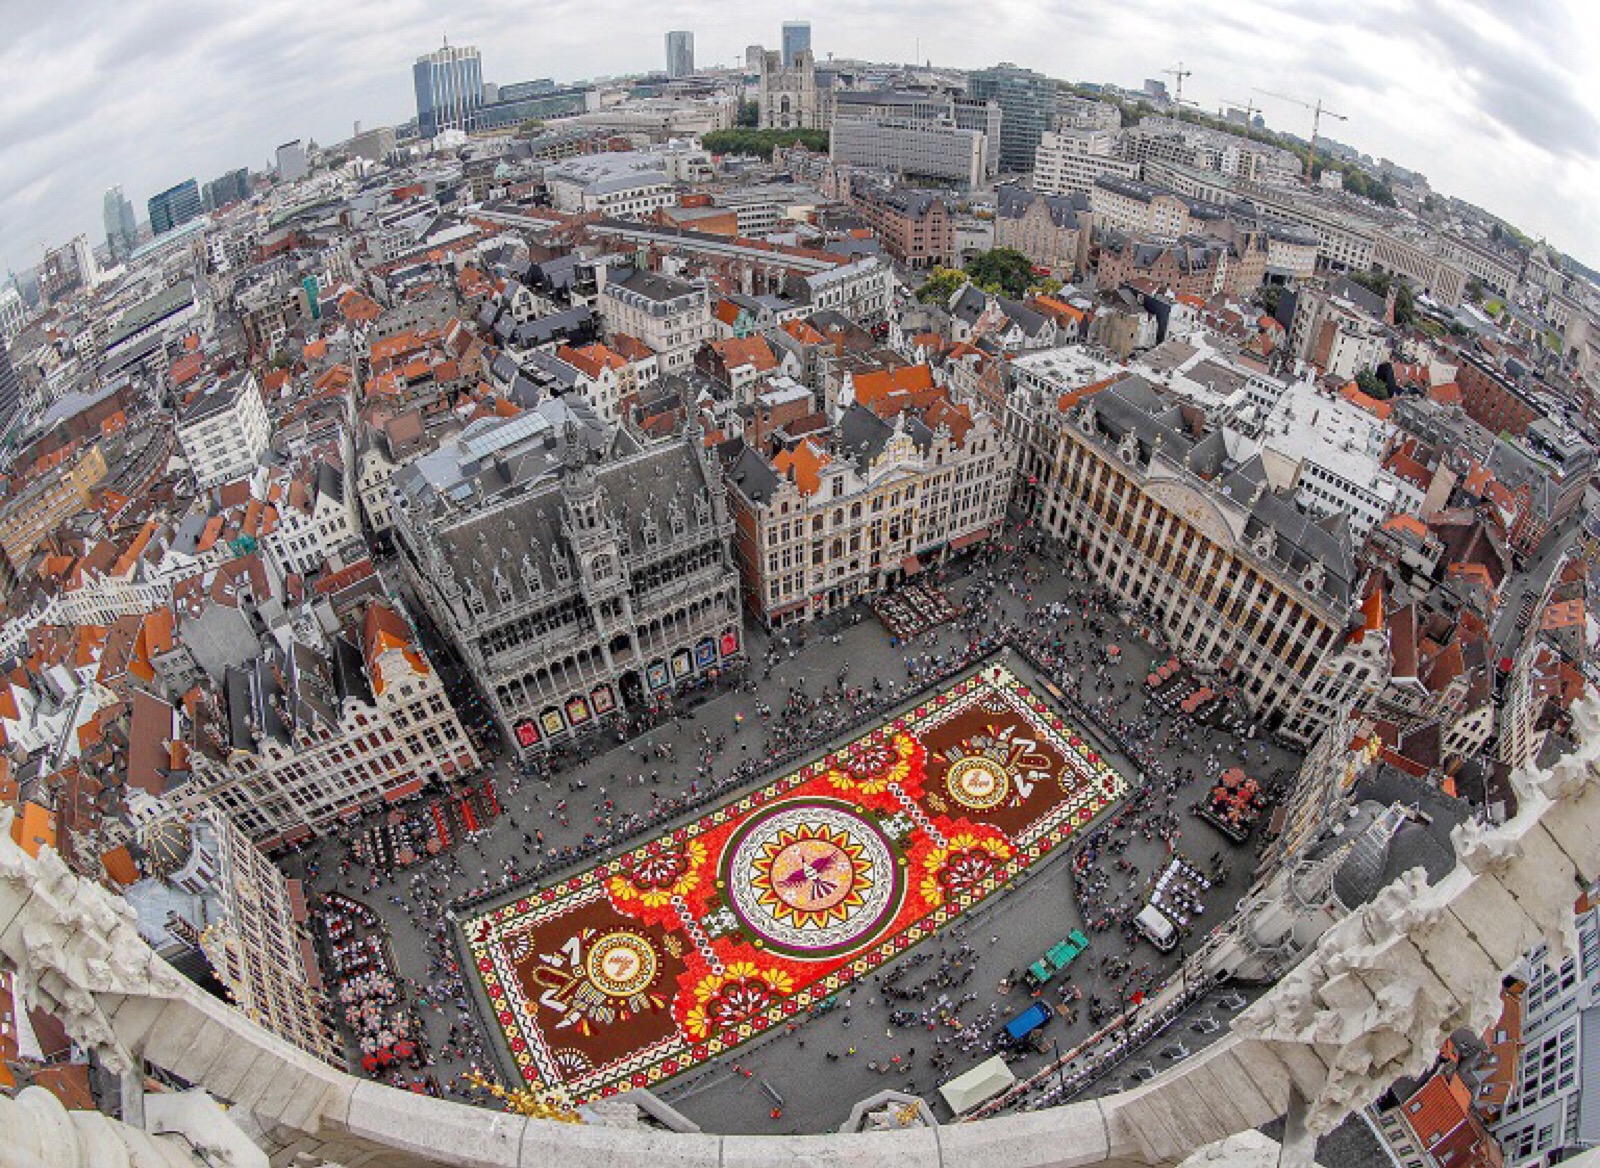 布鲁塞尔大广场铺设一幅巨型「鲜花地毯」(flower carpet),比利时